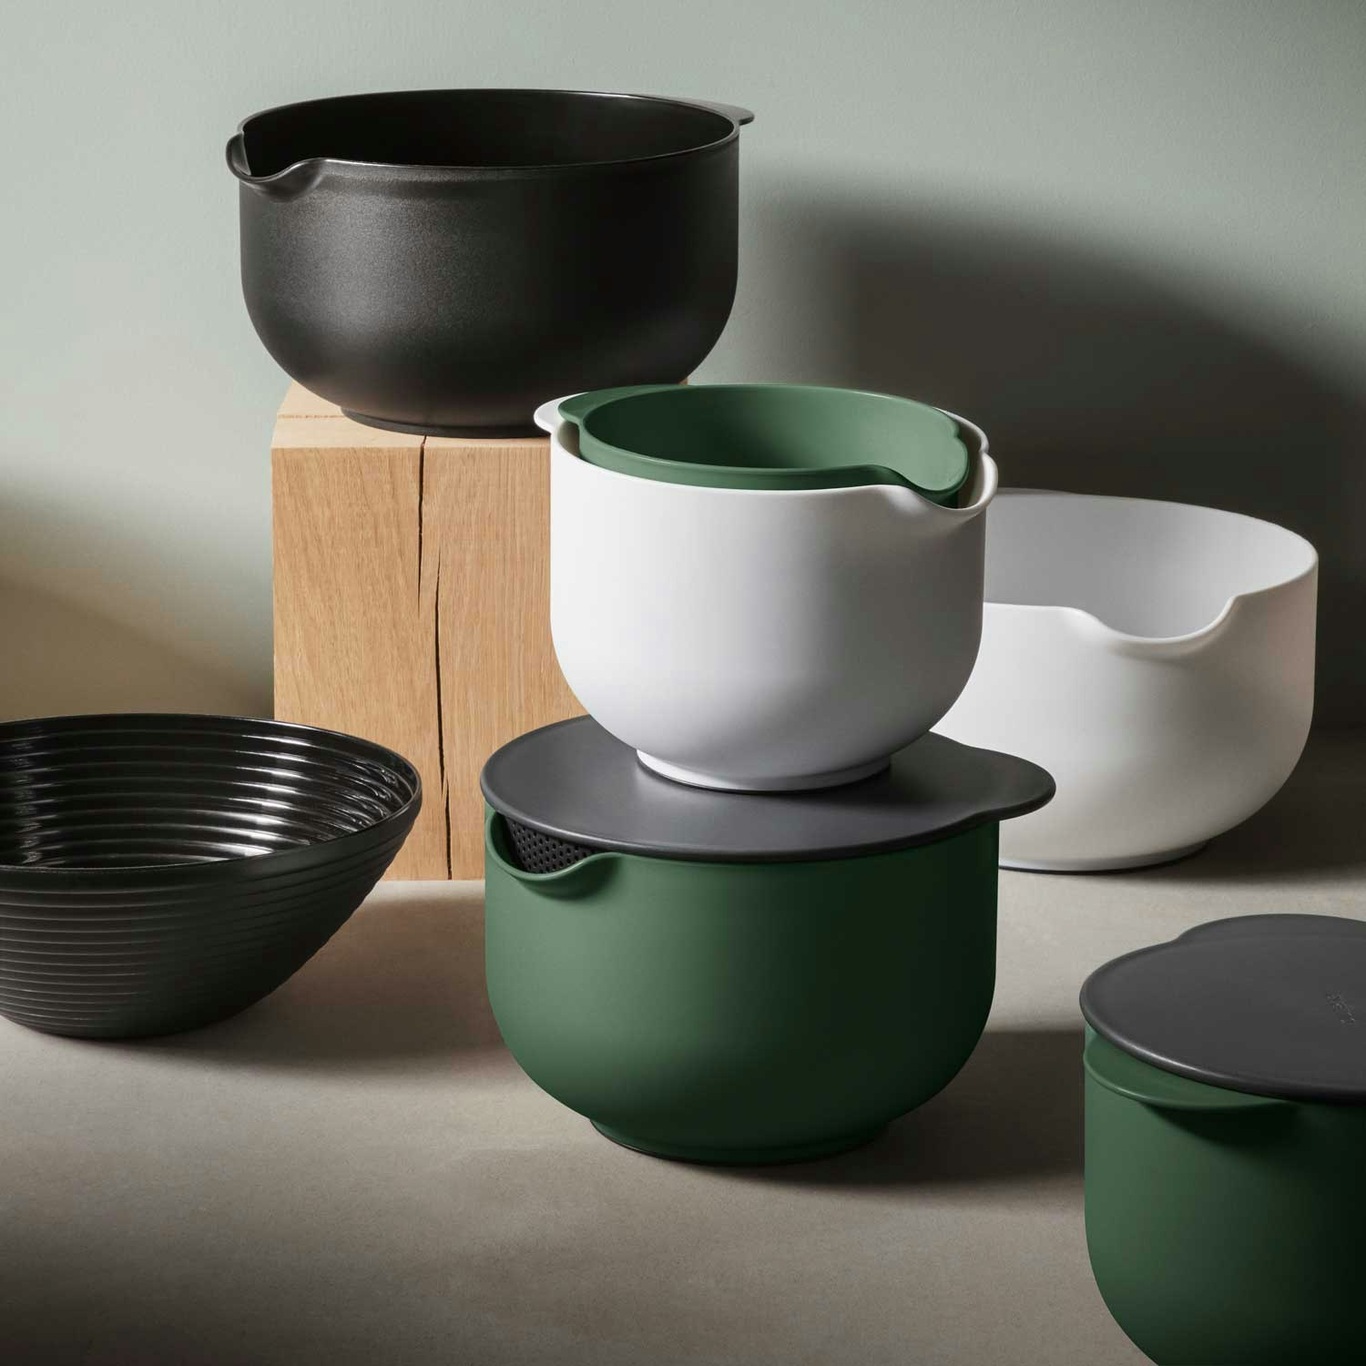 https://royaldesign.com/image/2/eva-solo-eva-mixing-bowl-22?w=800&quality=80